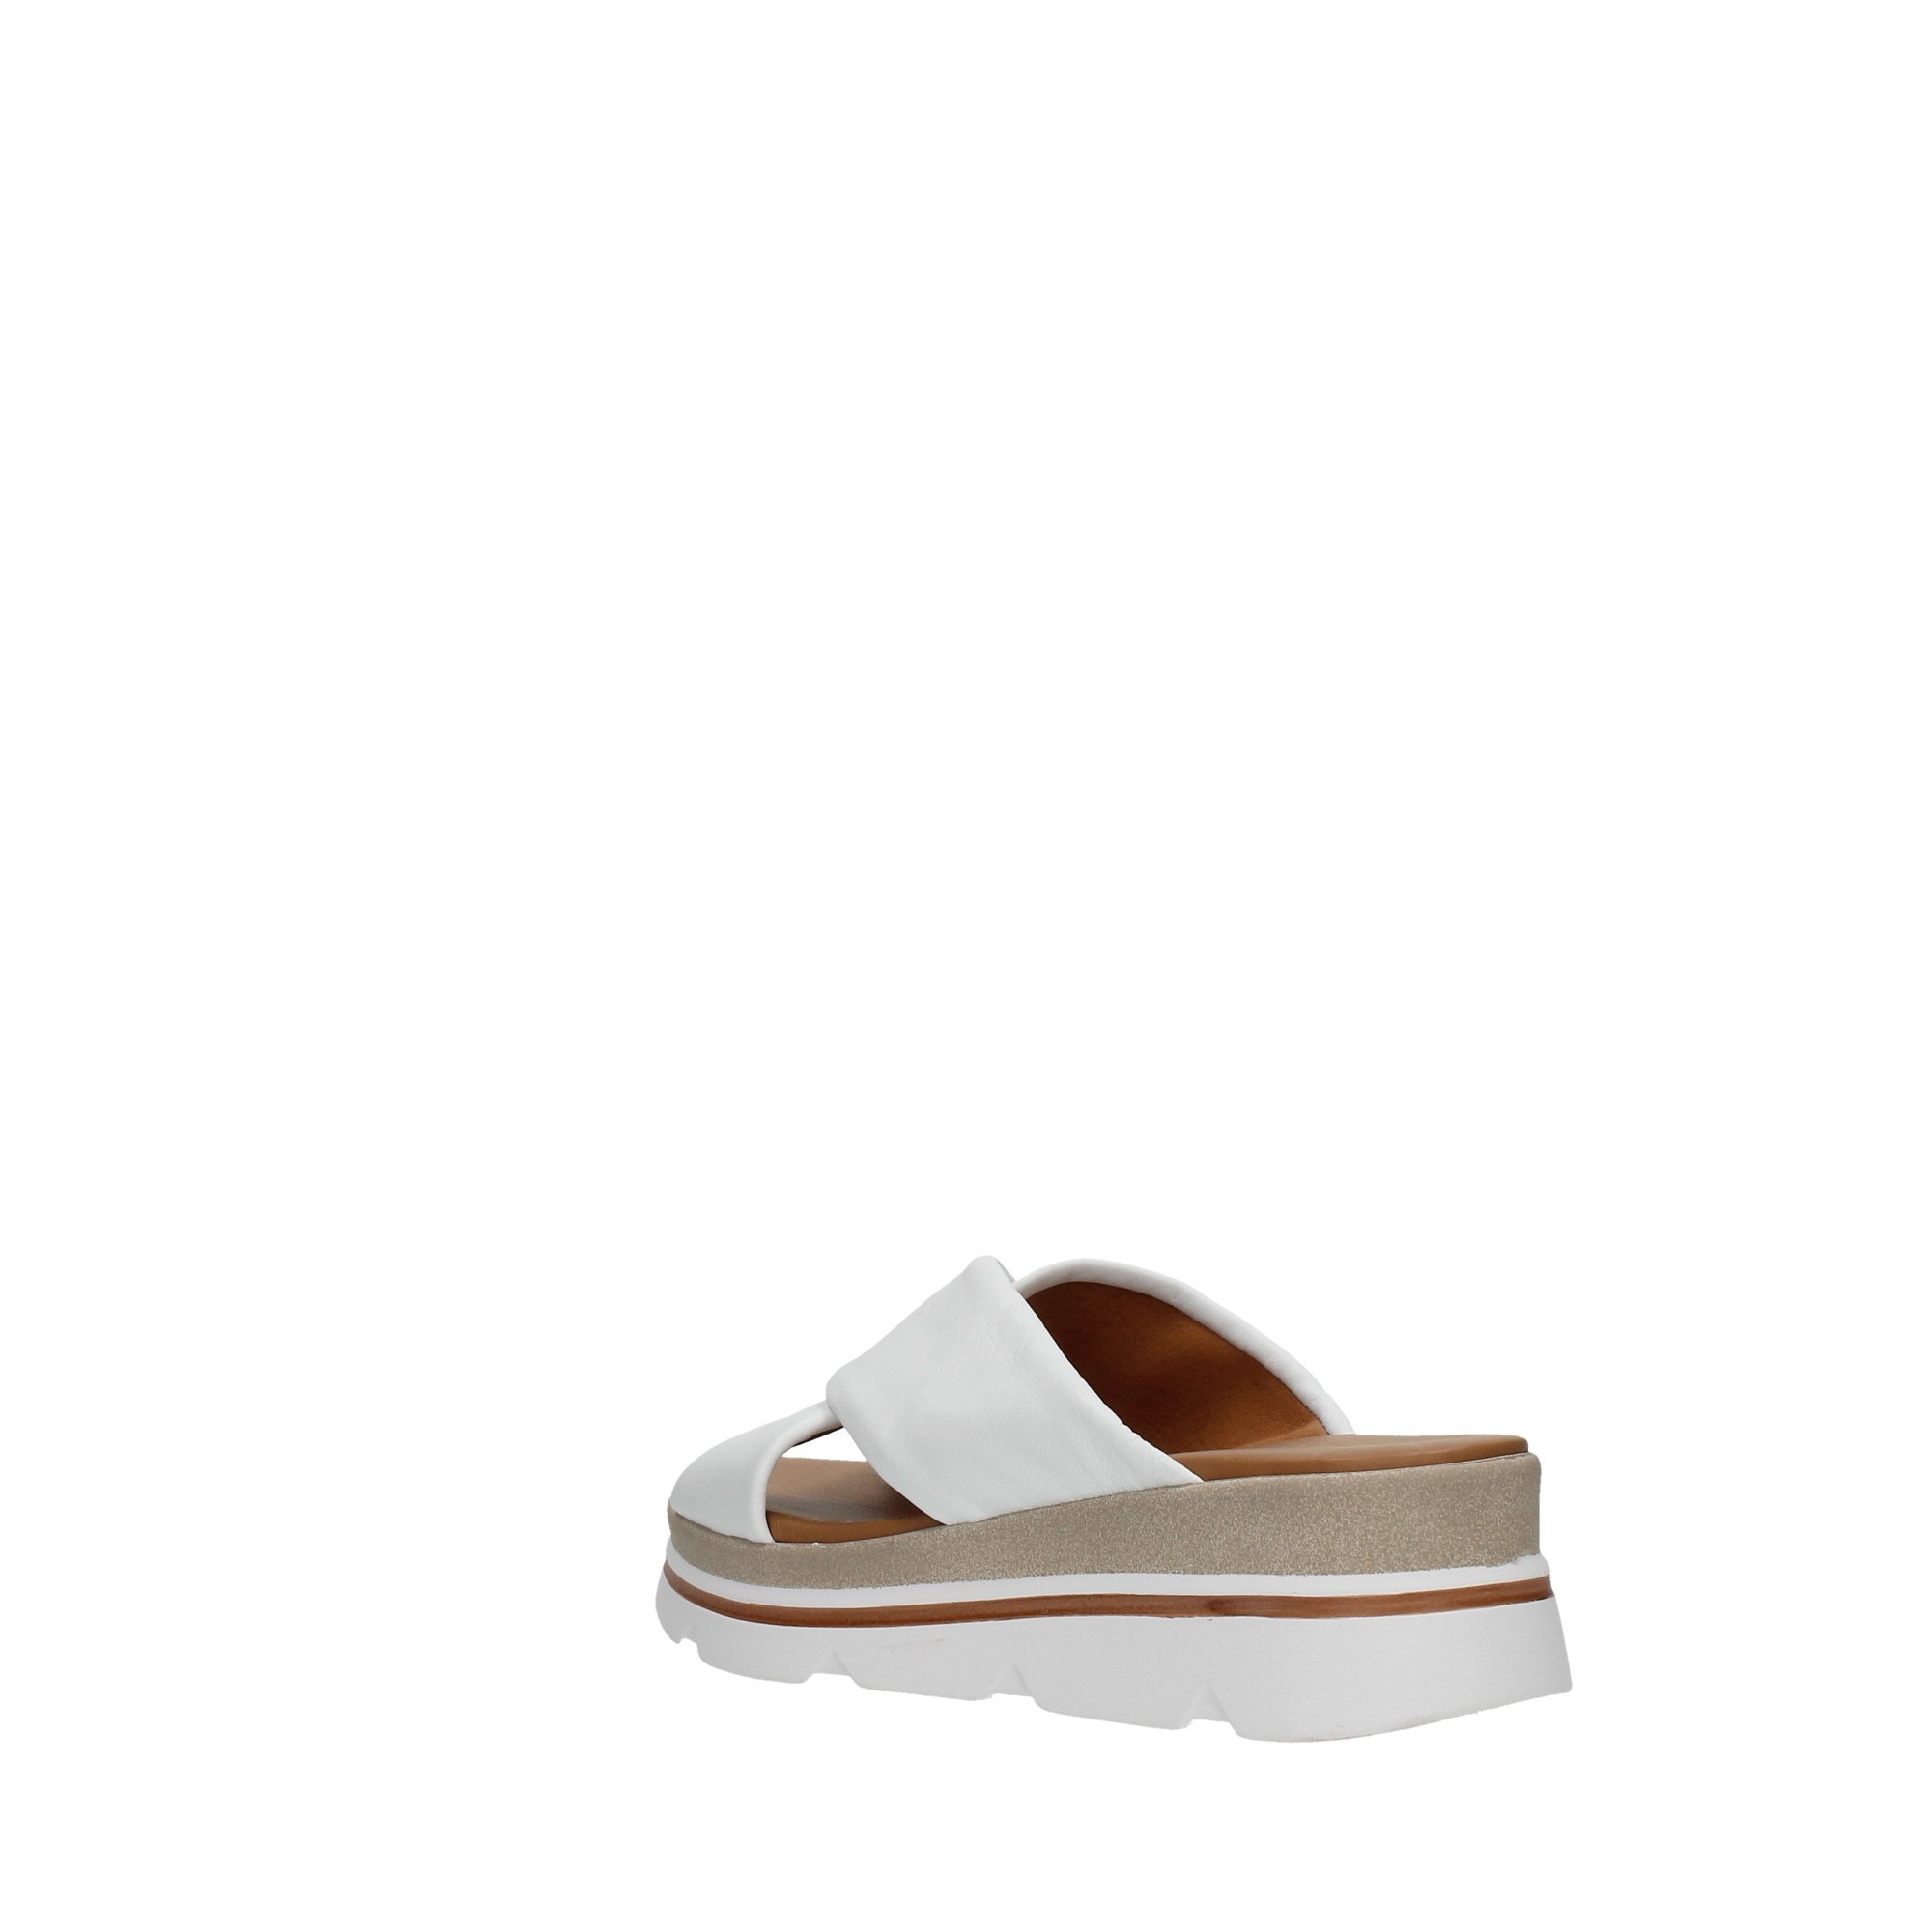 Elisa Conte Shoes Women Sandals White G93